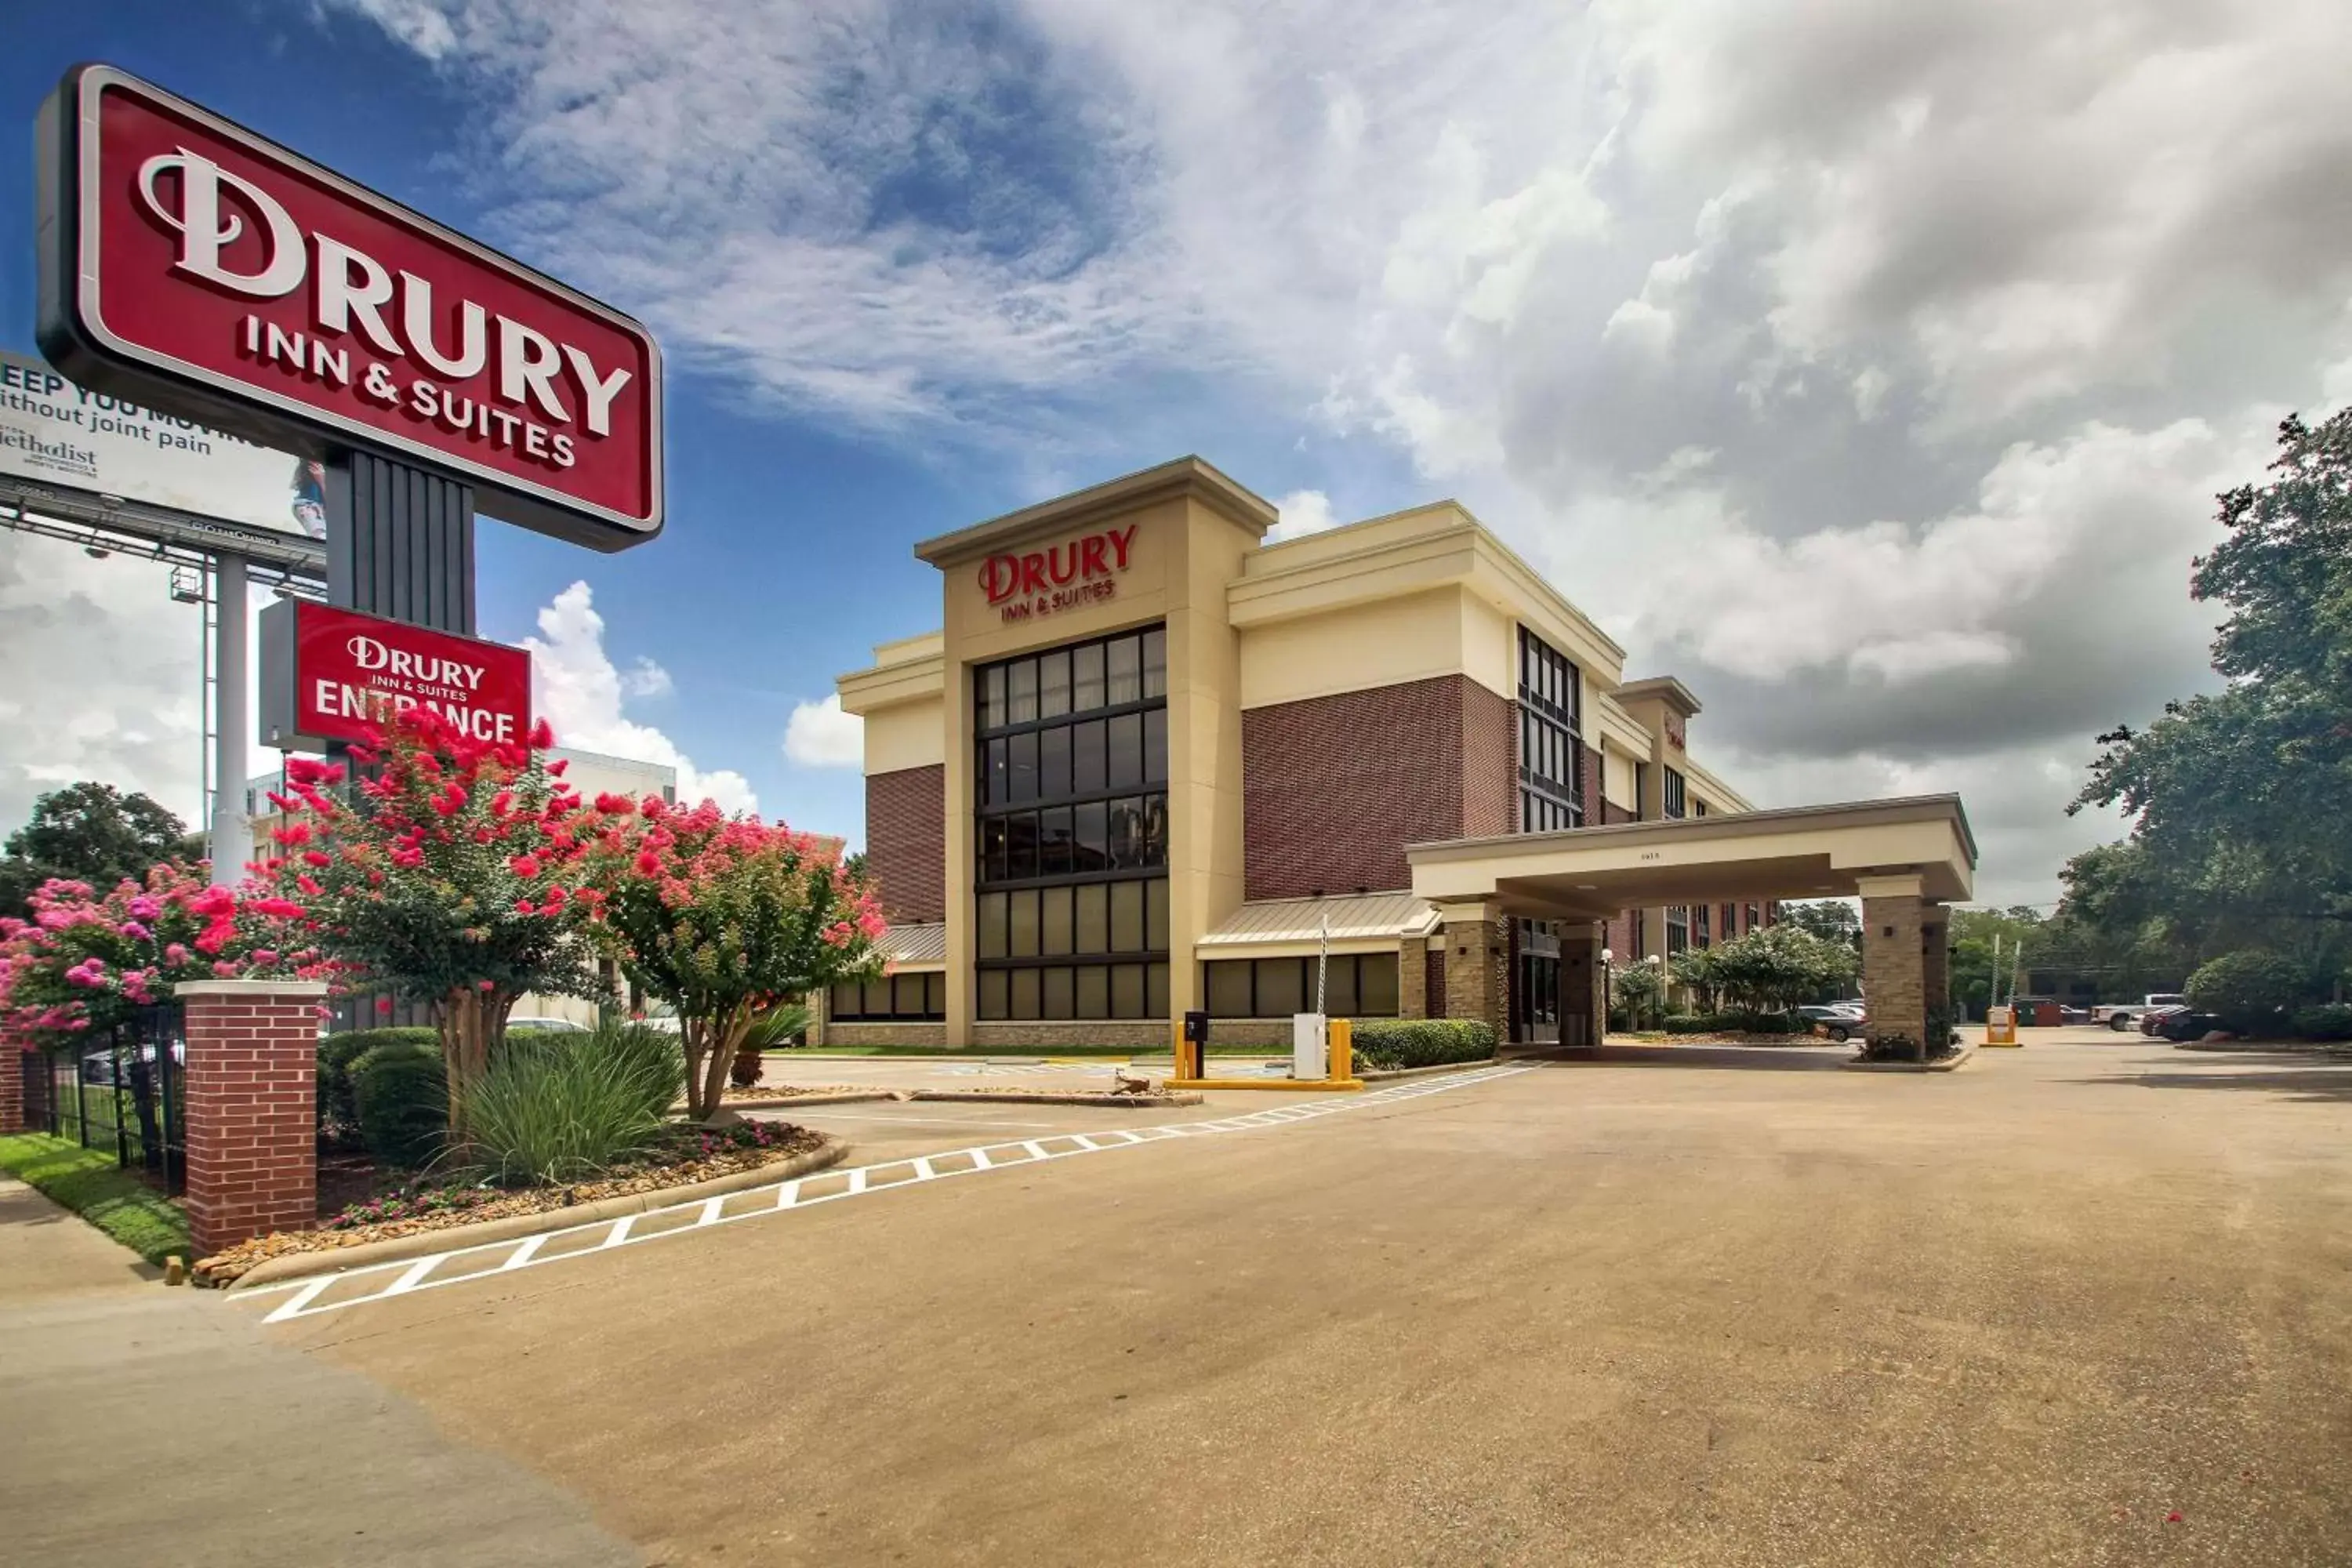 Property building in Drury Inn & Suites Houston Galleria